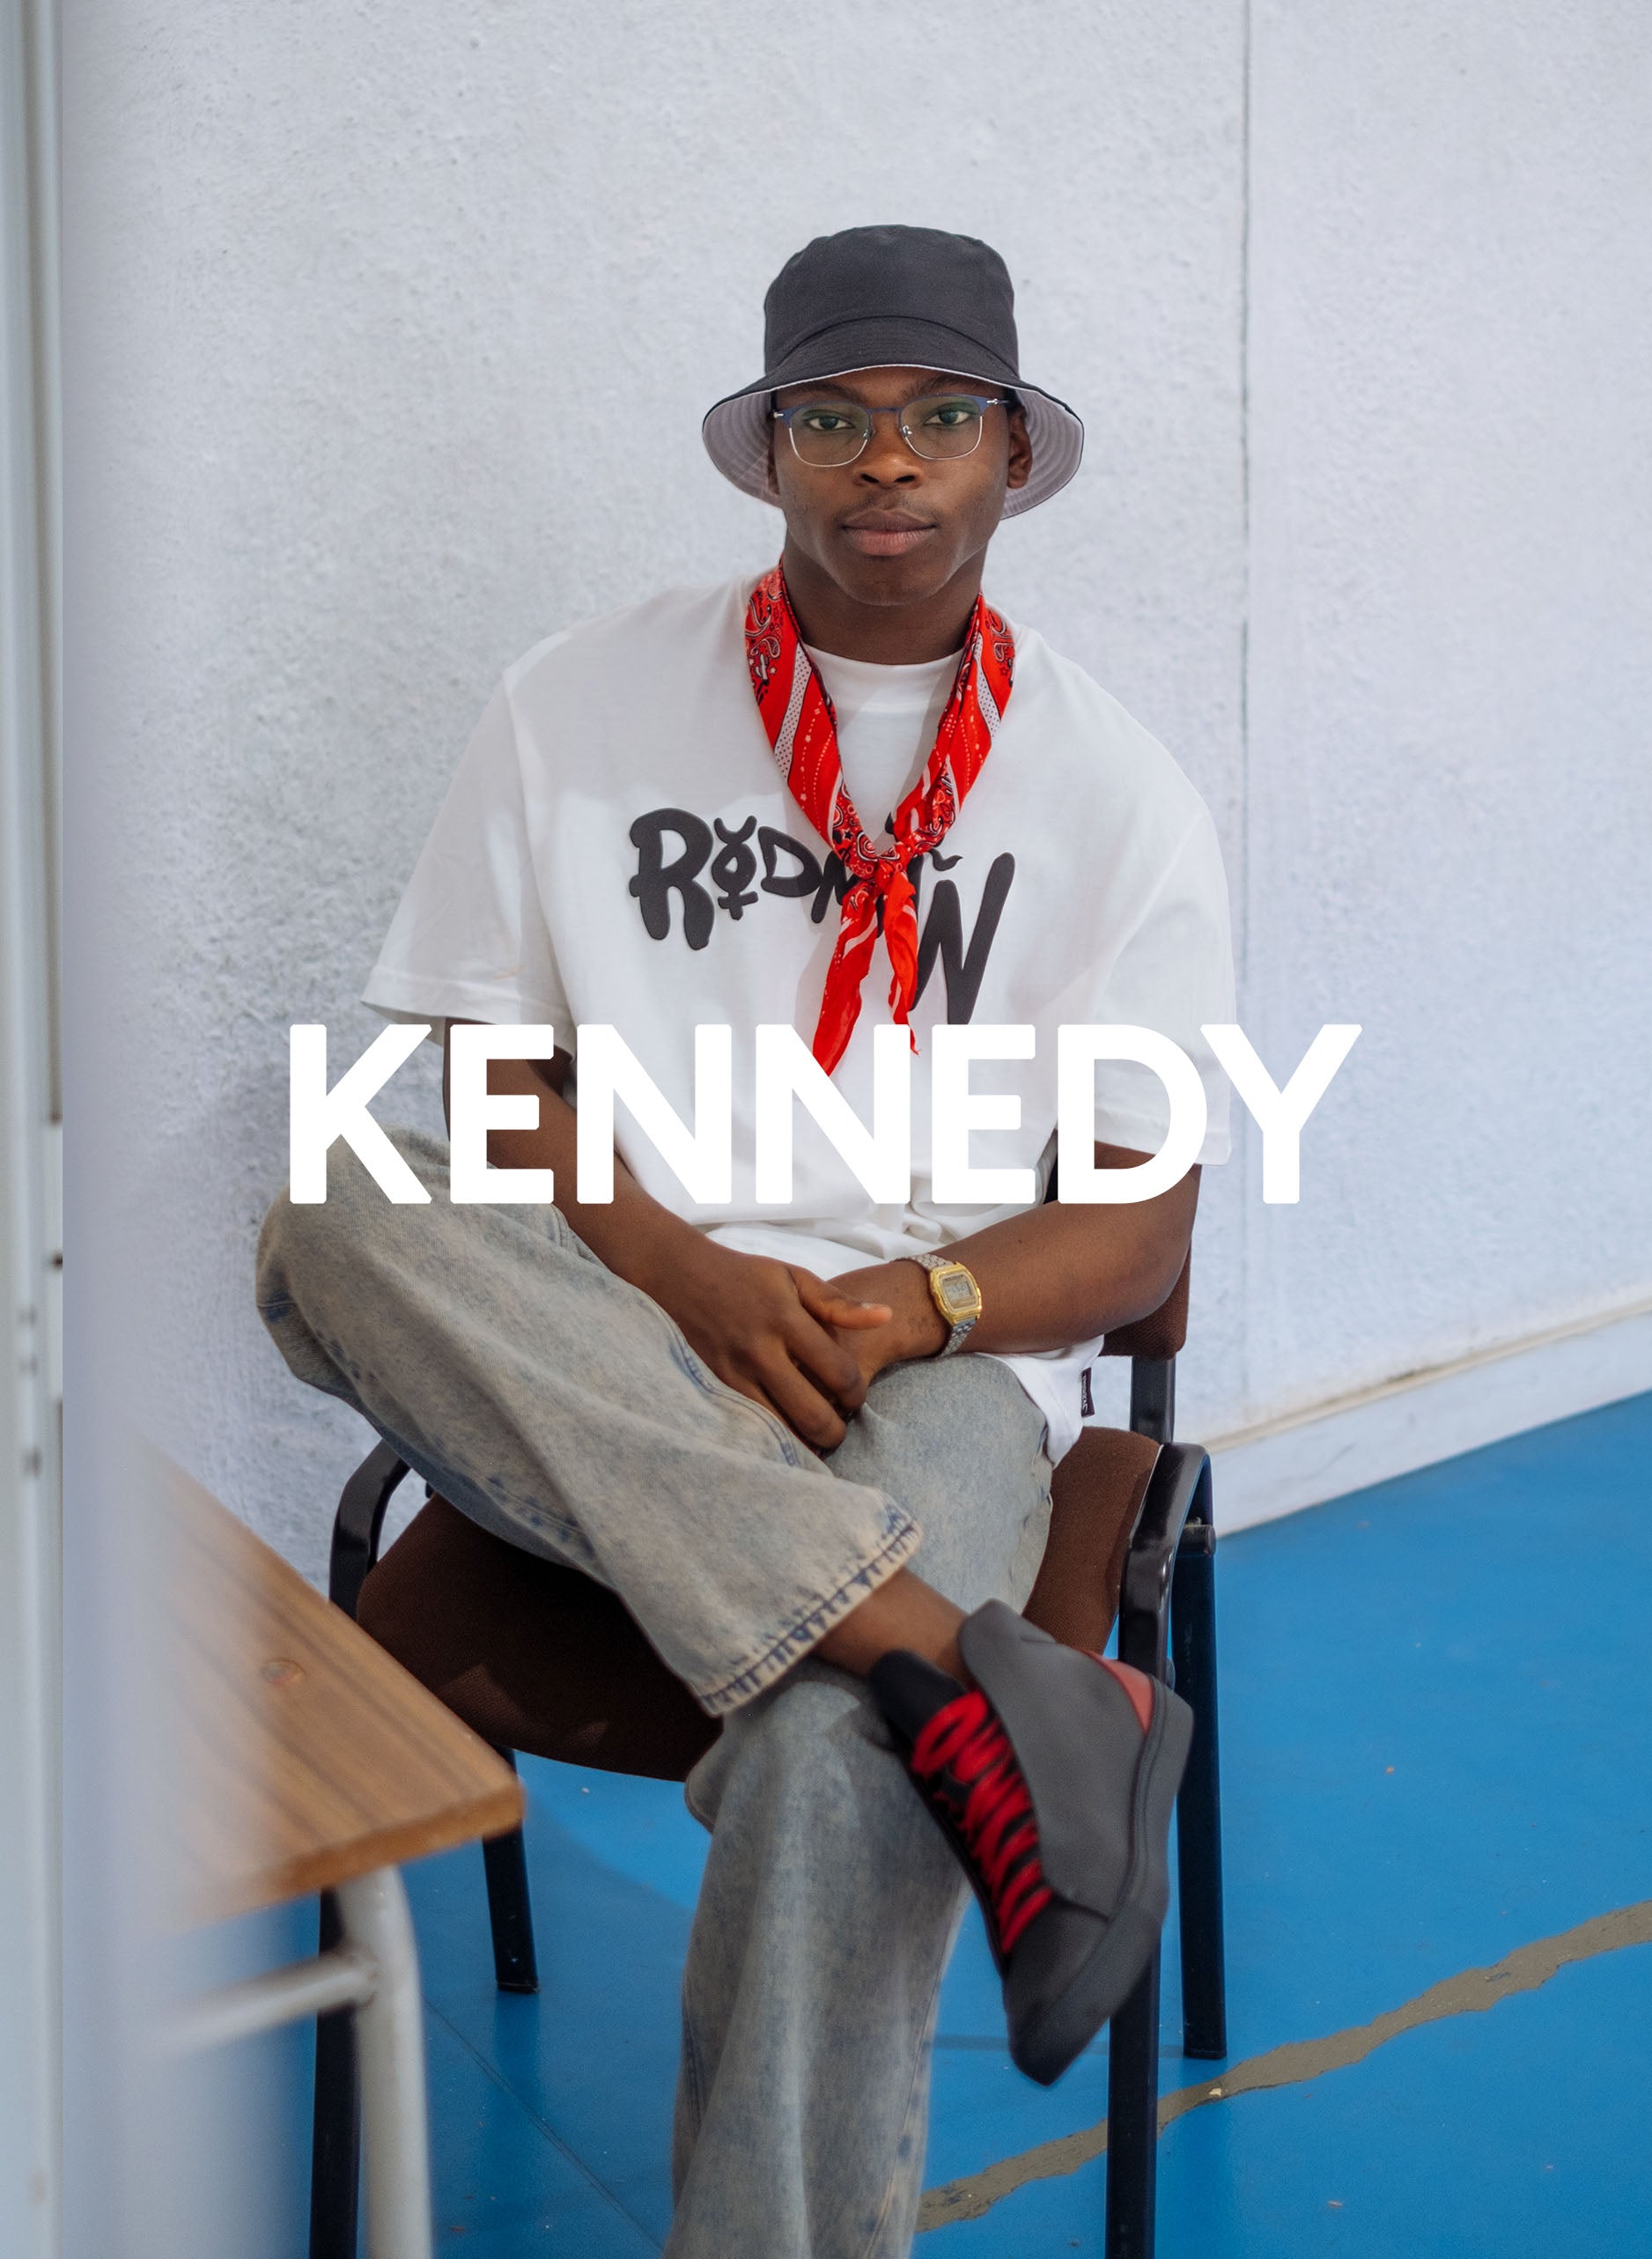 Kennedy sentado en una silla, vestido Diverge sneakers, mostrando el impacto social y los zapatos personalizados a través del proyecto Imagine.